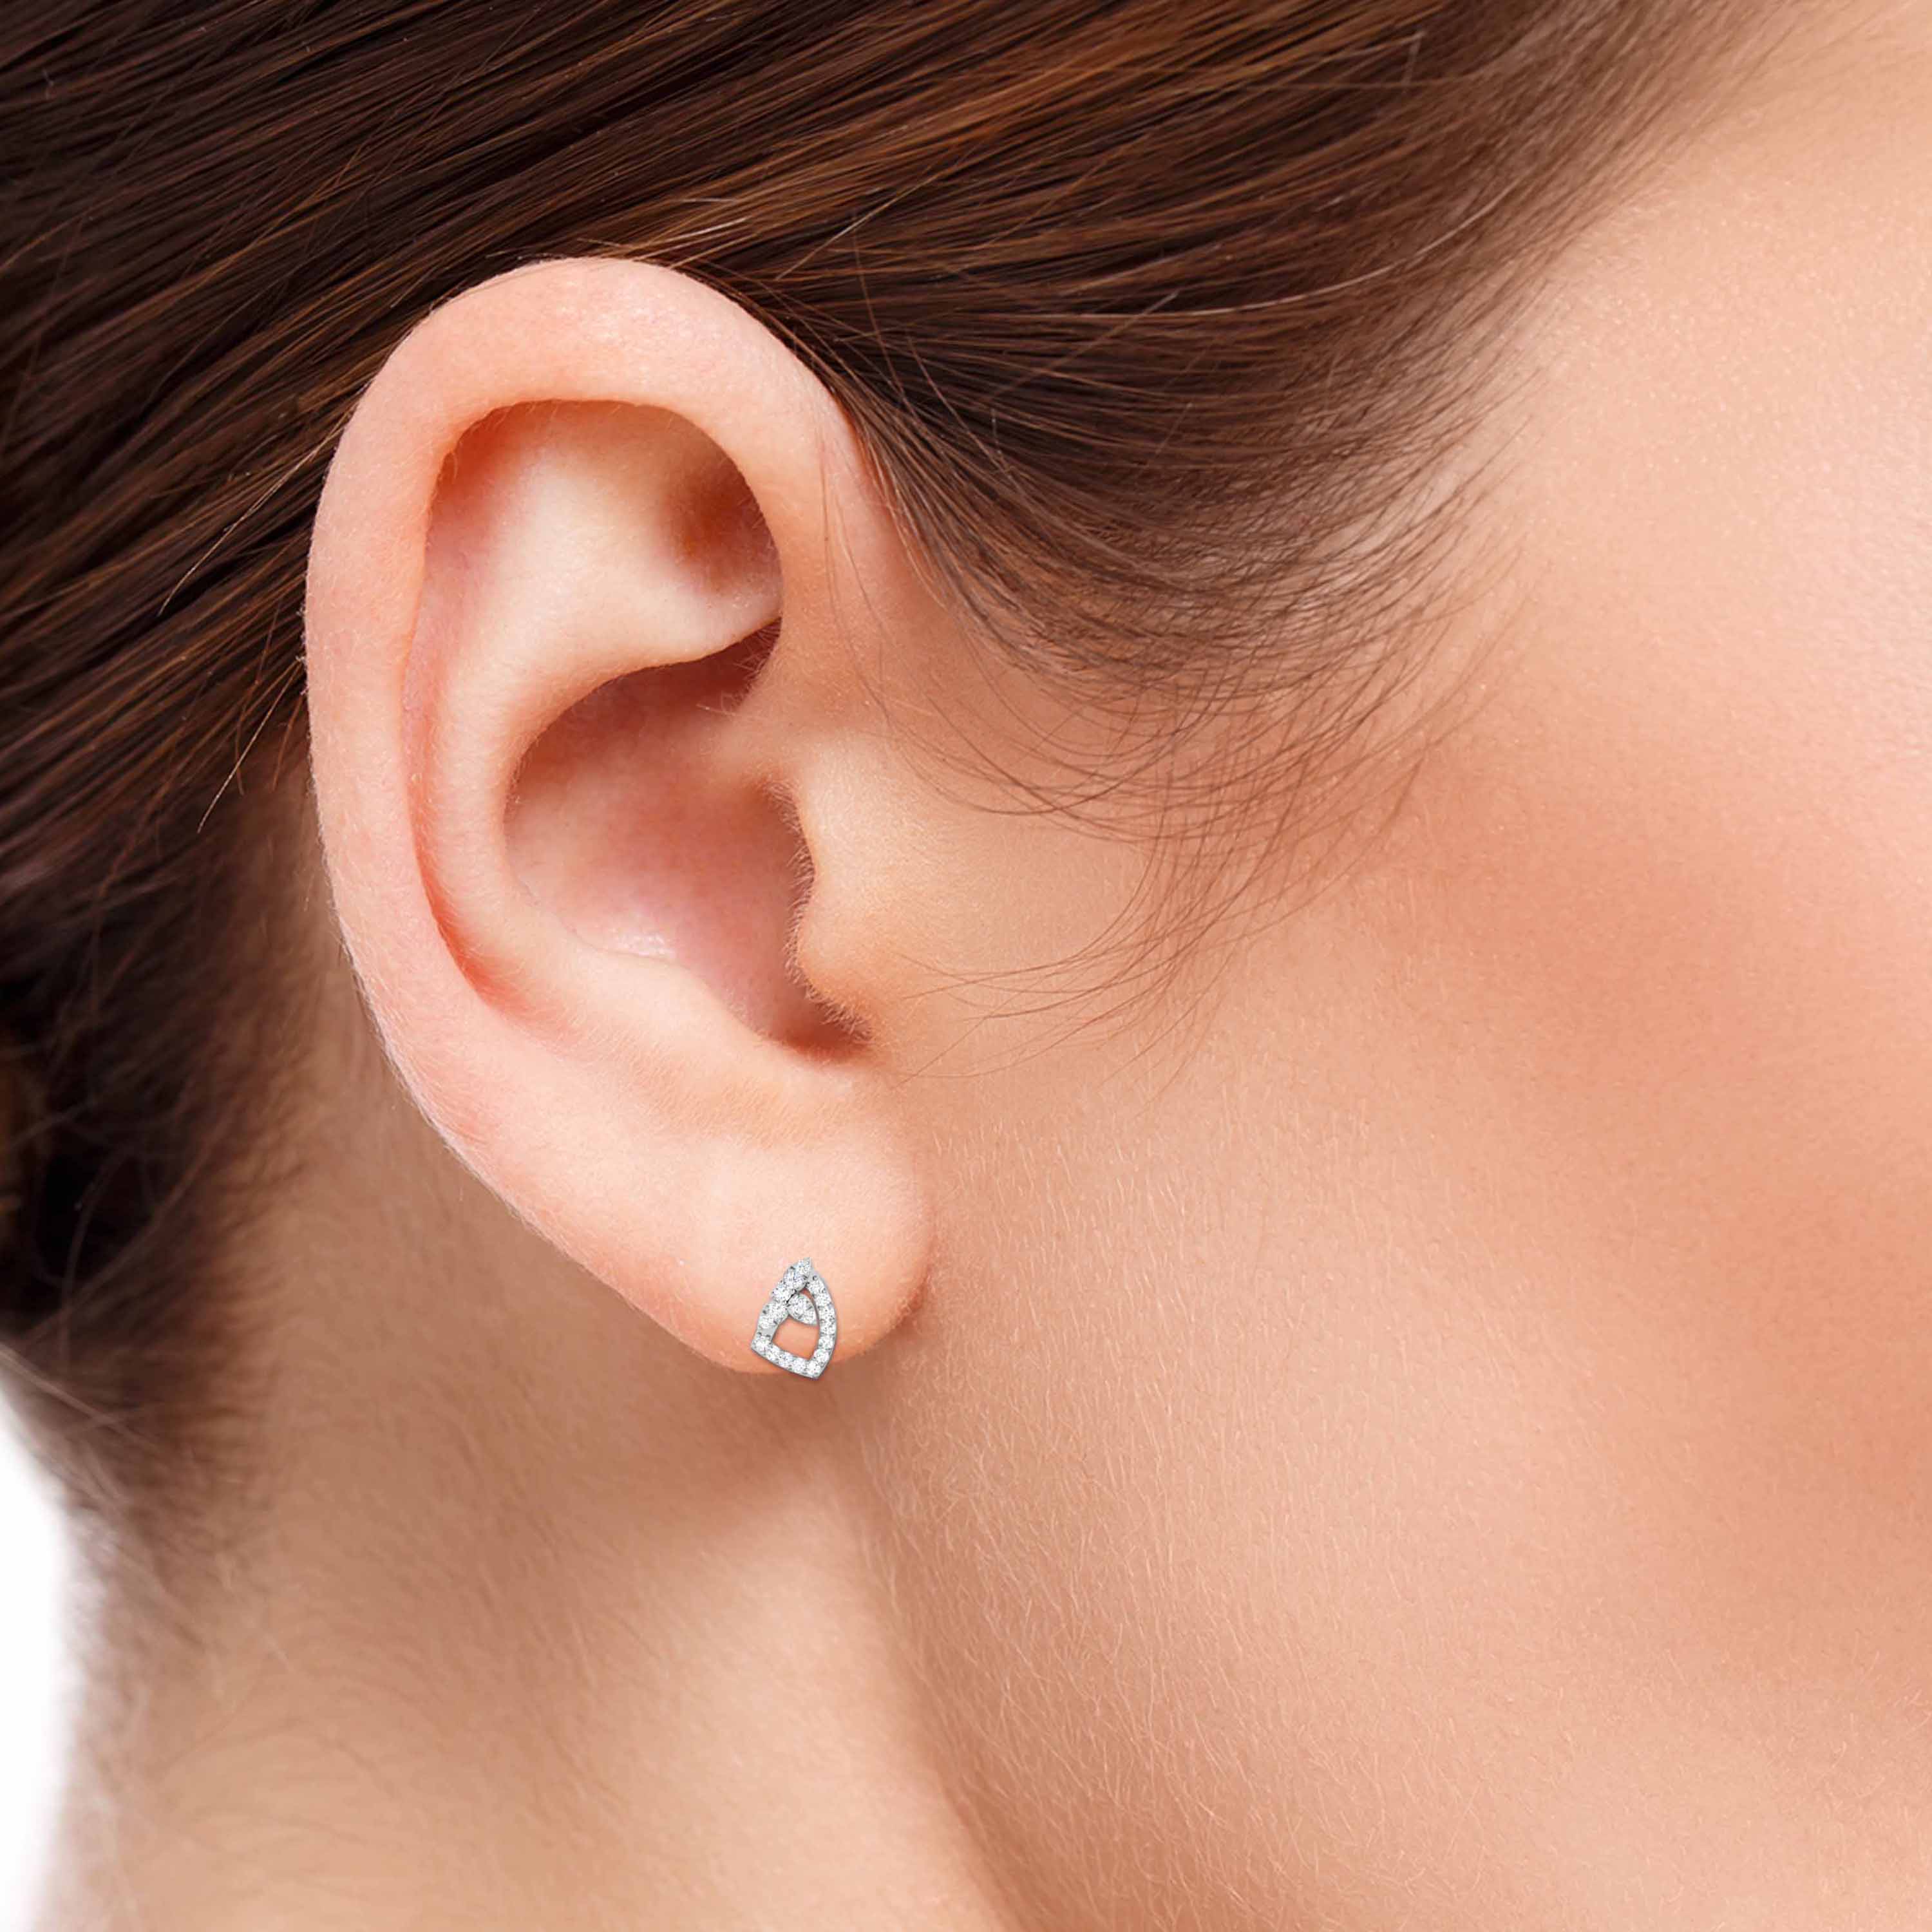 Designer Platinum Diamond Earrings for Women JL PT E OLS 18